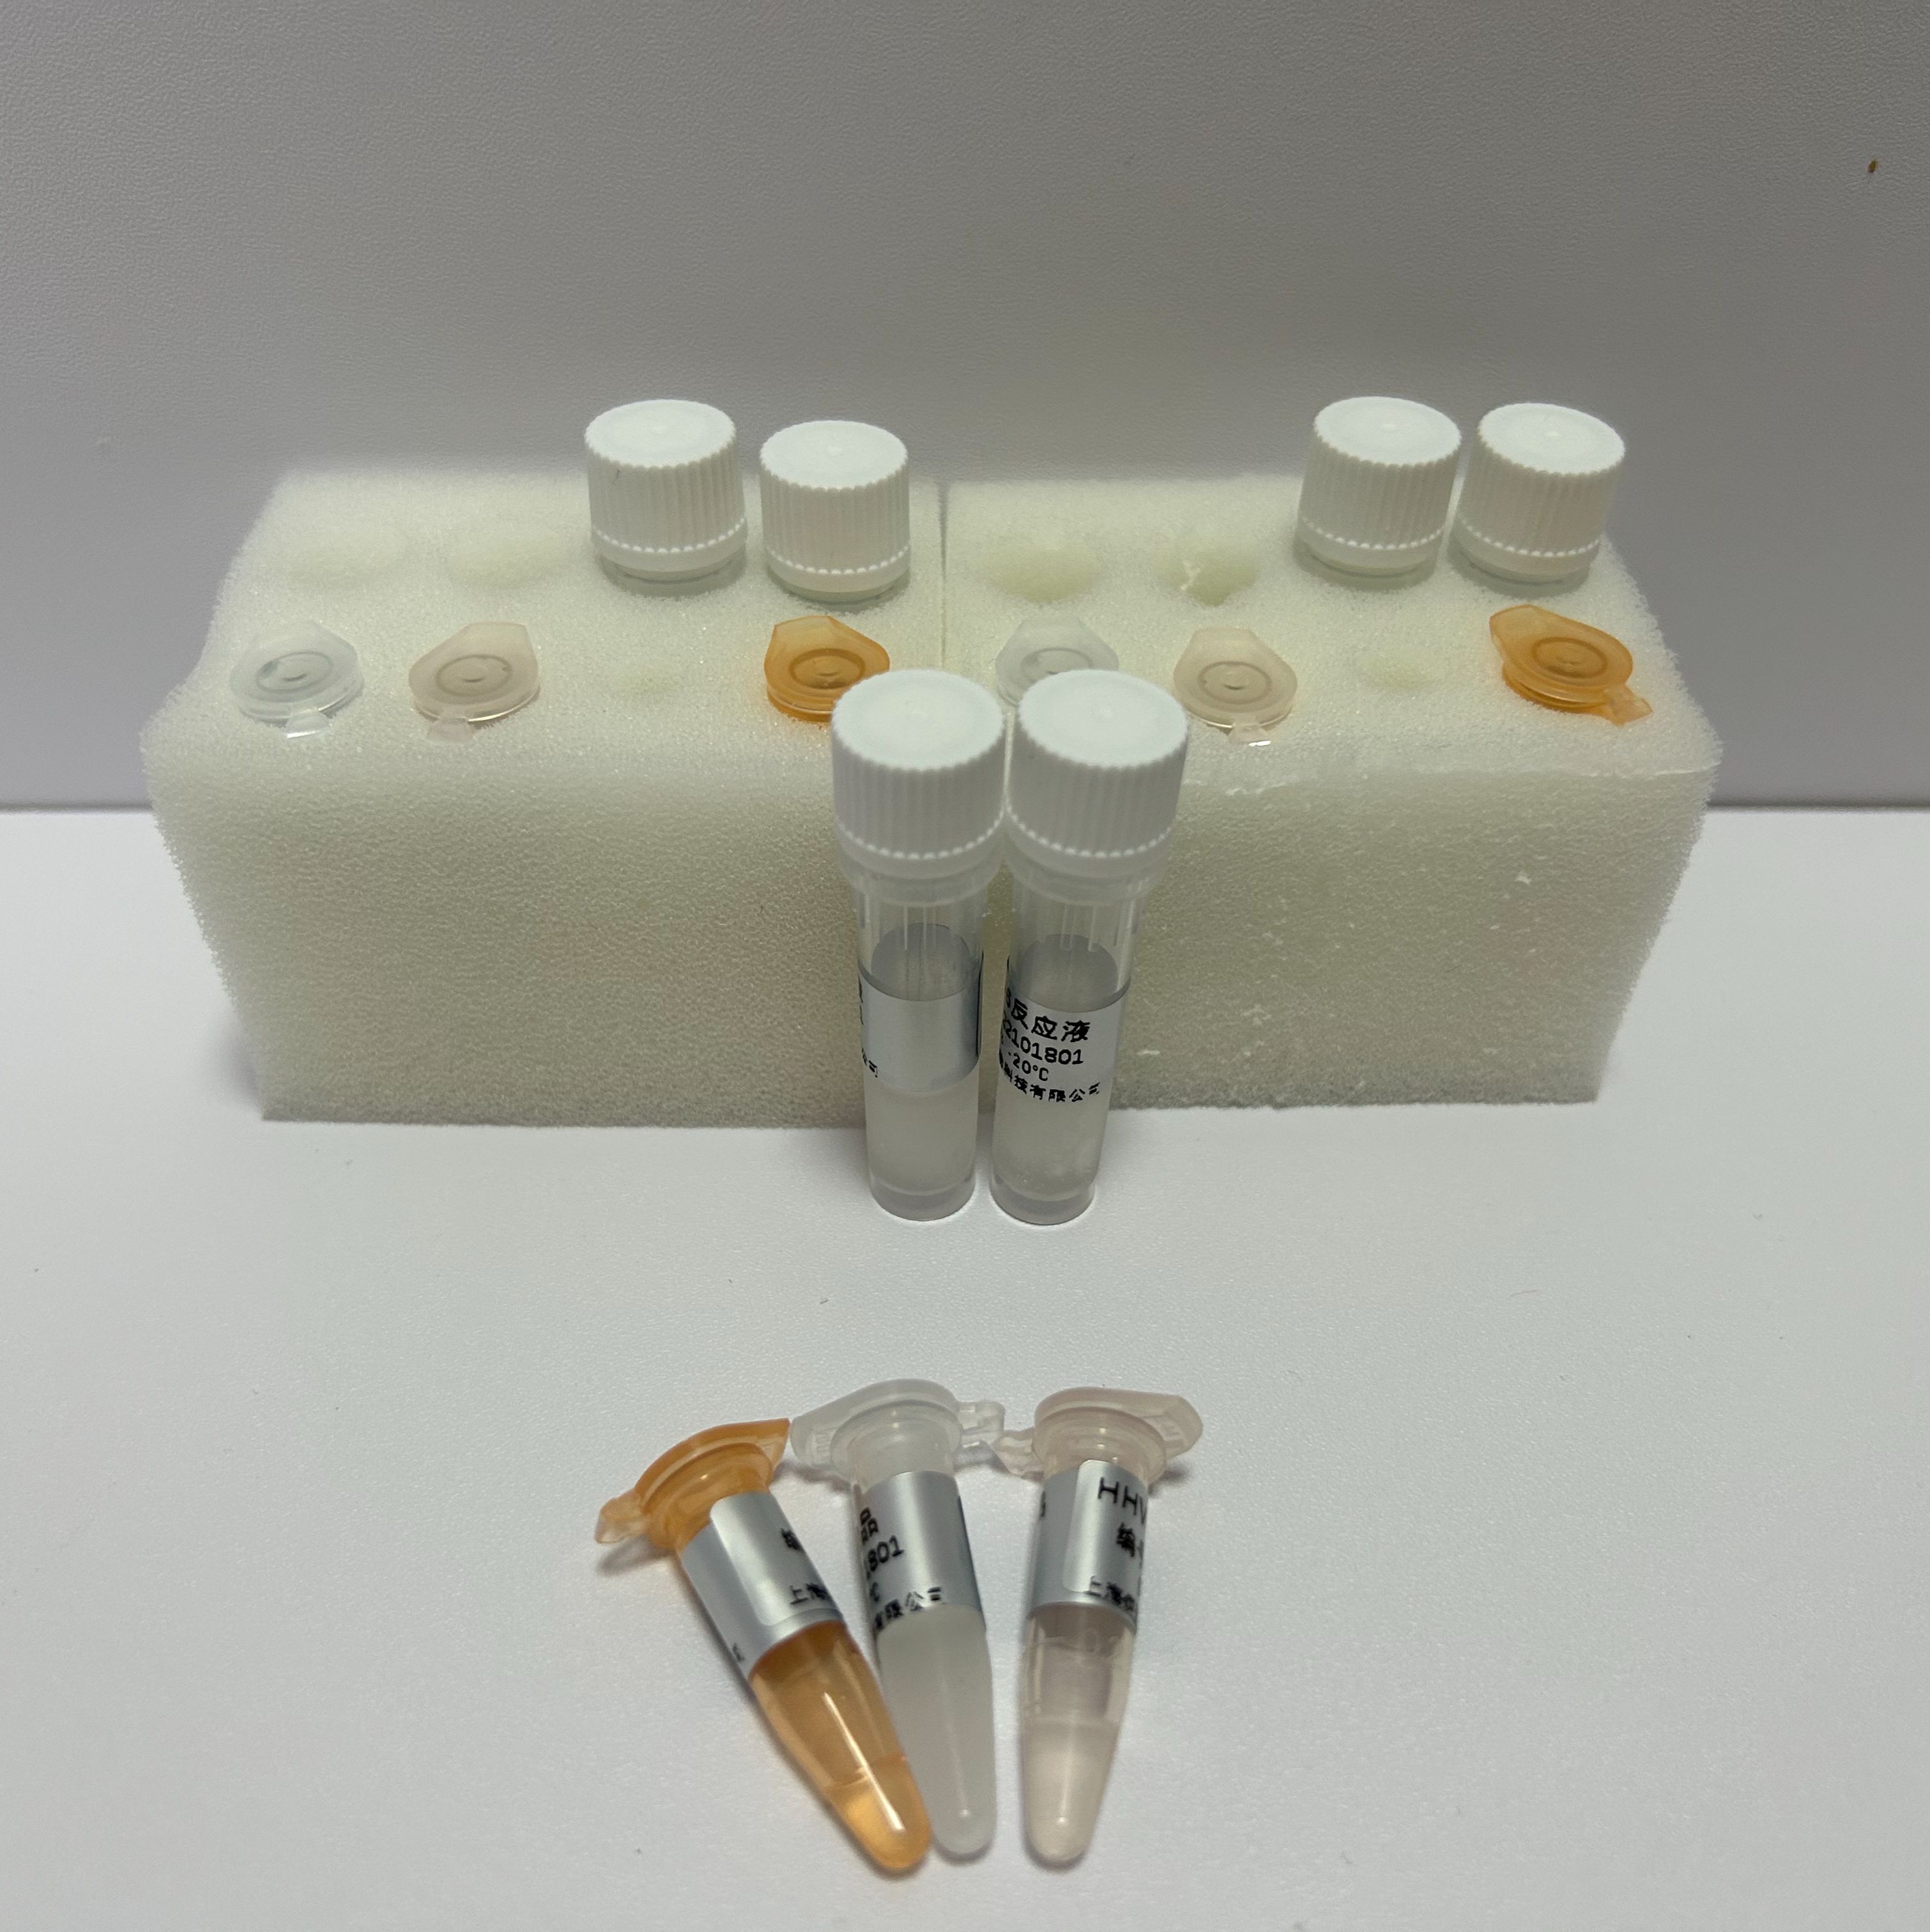 大黄探针法PCR鉴定试剂盒